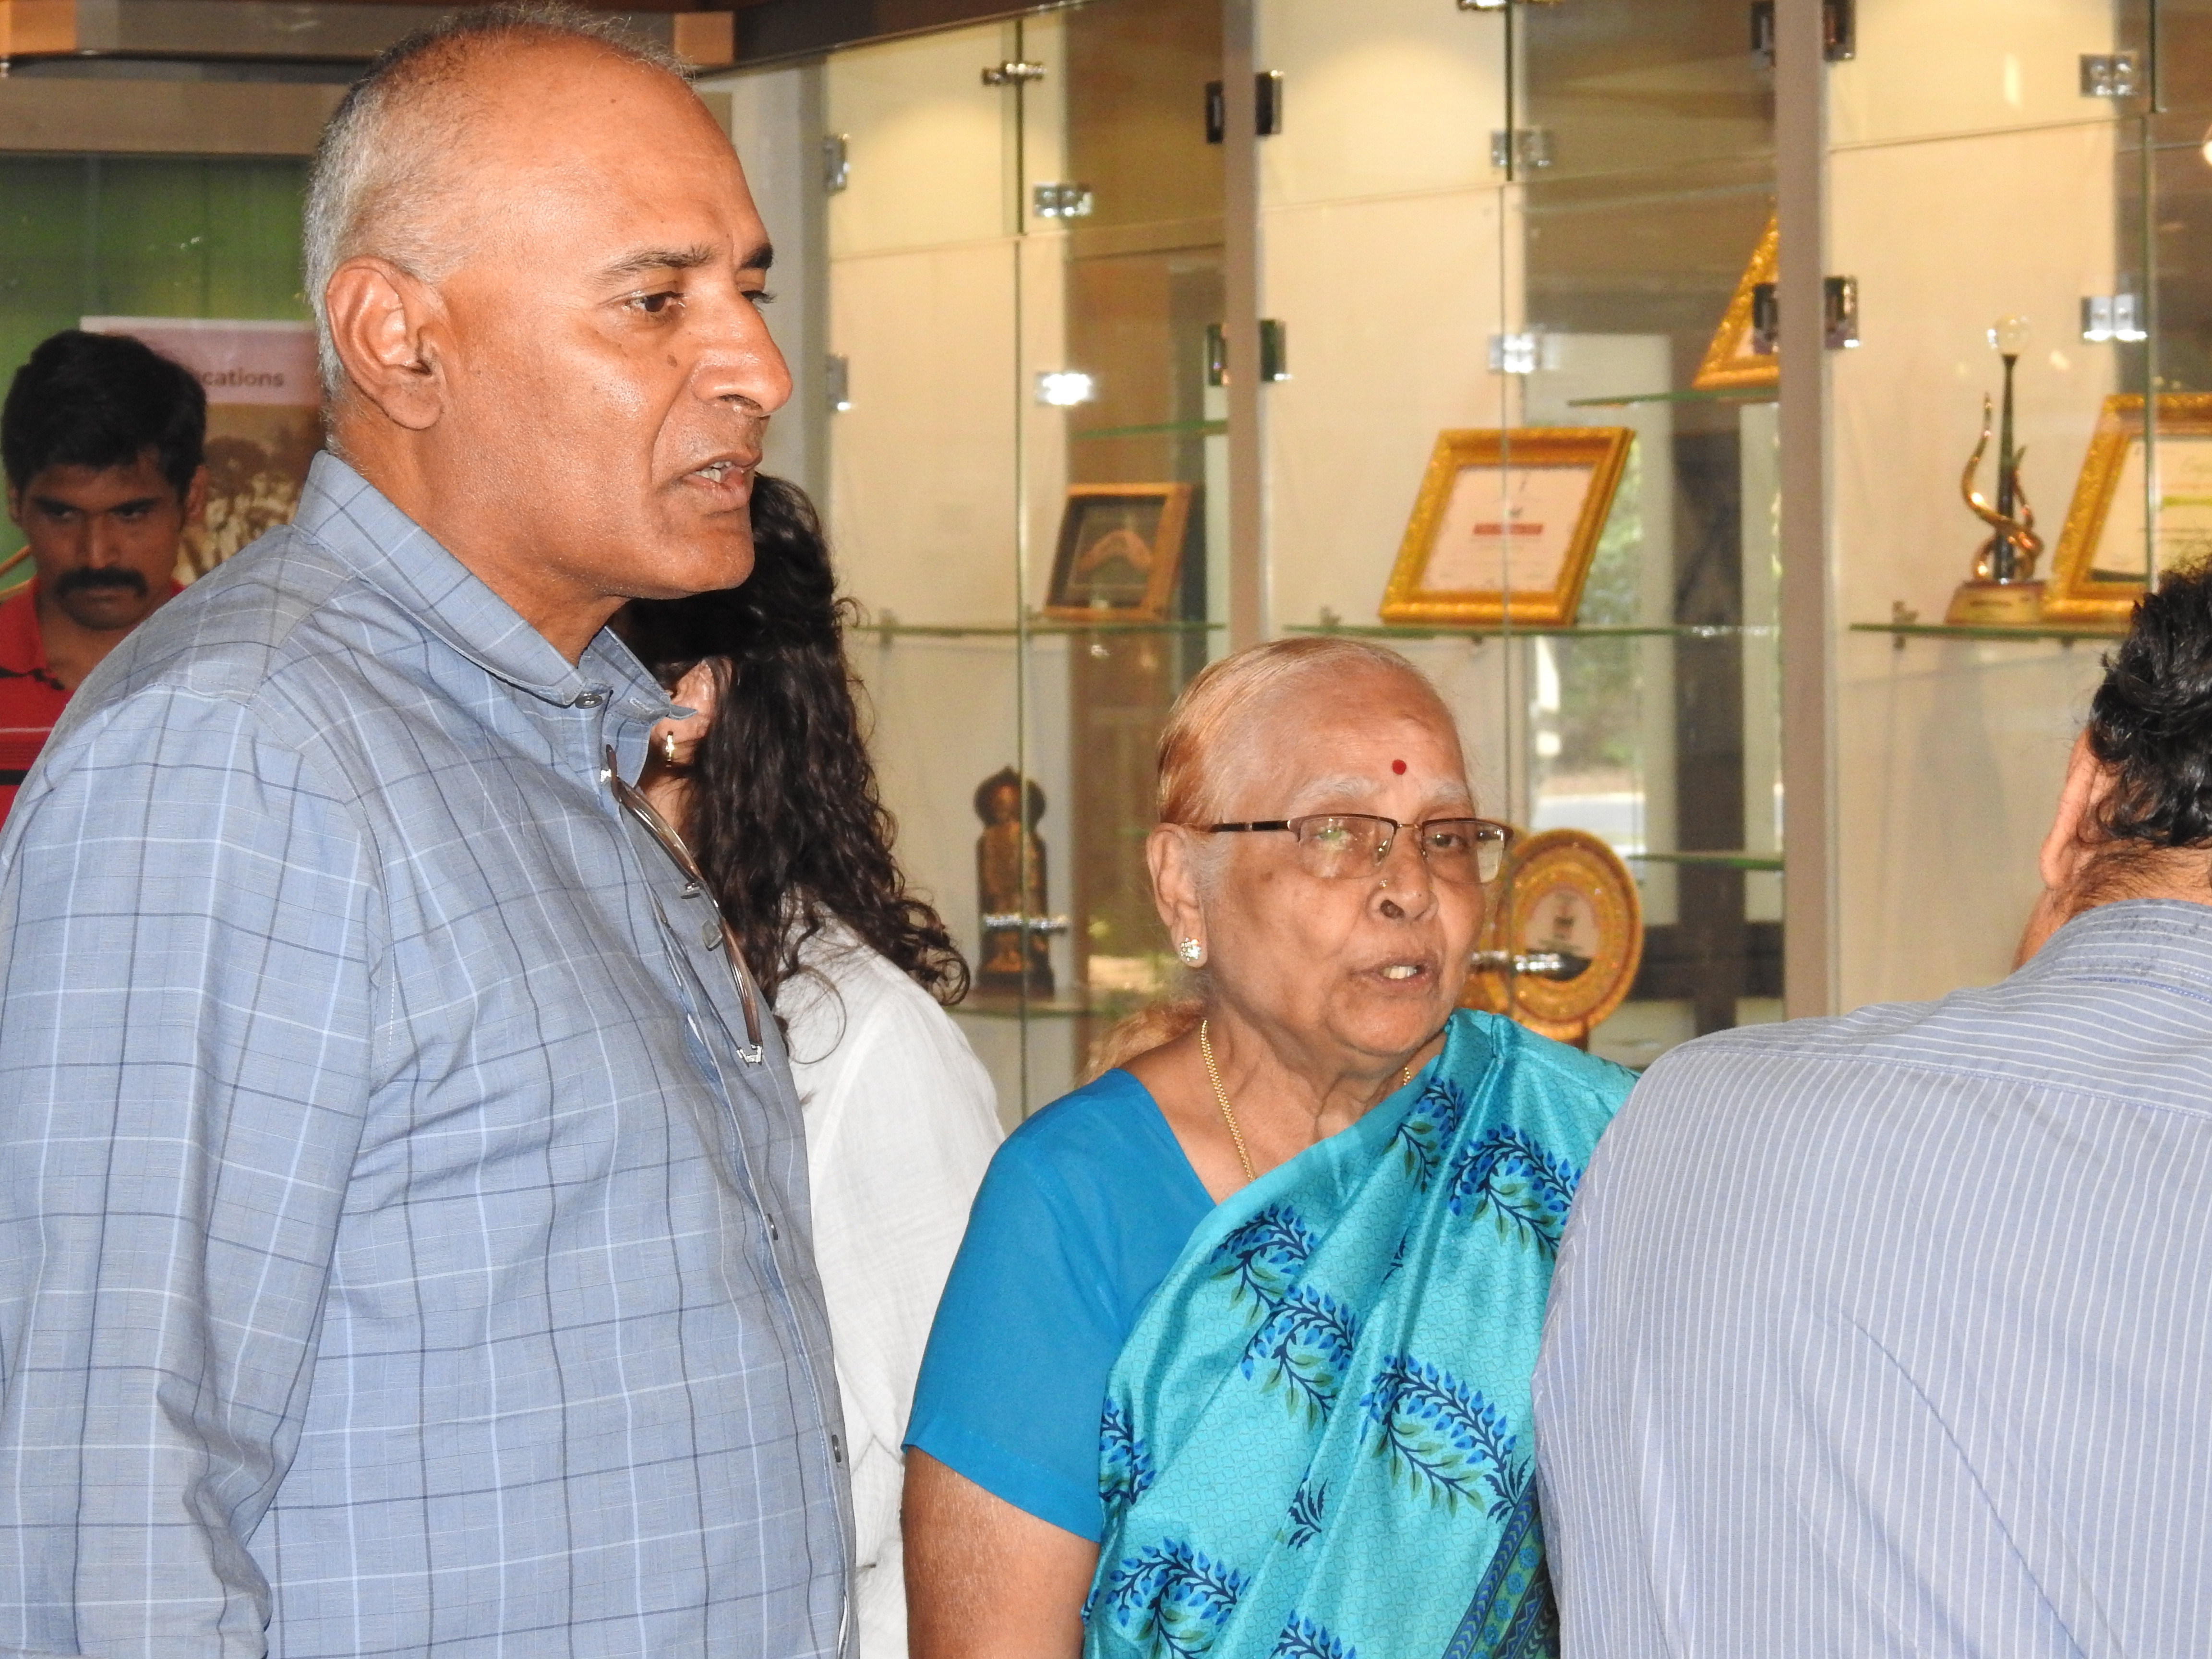 Mr. Venugopal Arumudavan and Mrs. Arumudavan at the Heritage Centre